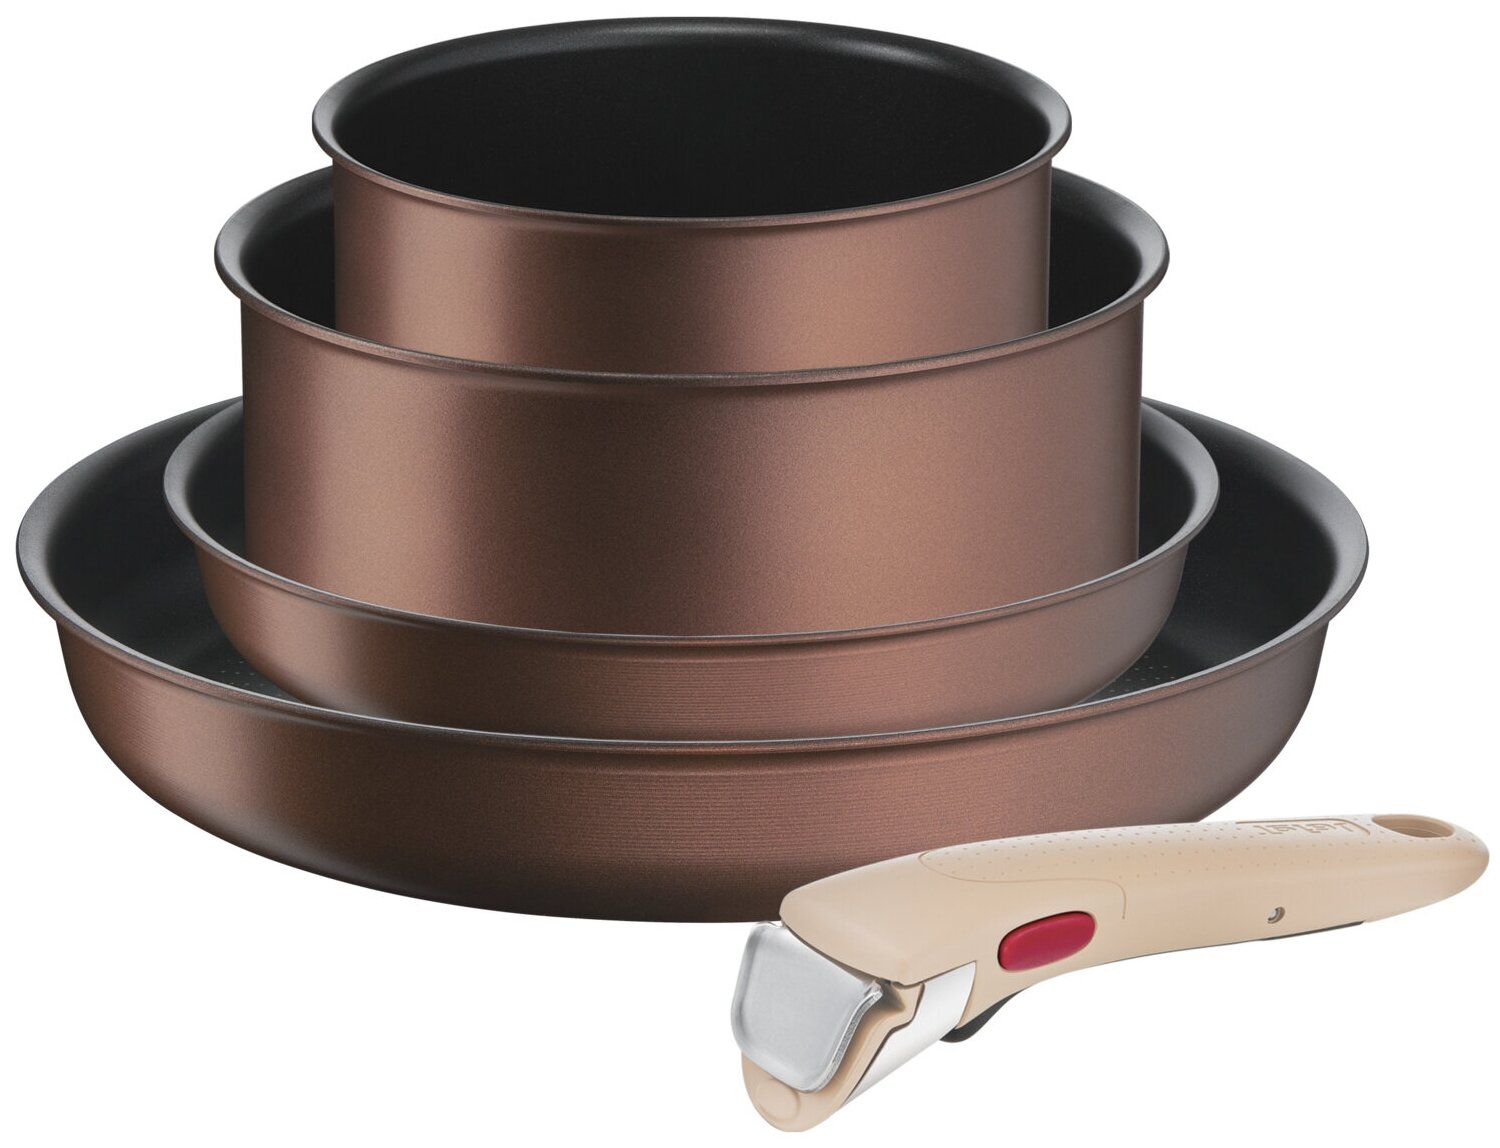 Набор посуды со съемной ручкой Tefal Ingenio Eco Respect L7609153, 5 предметов, с индикатором температуры, с антипригарным покрытием, для газовых, электрических и индукционных плит, сделан во Франции, коричневый